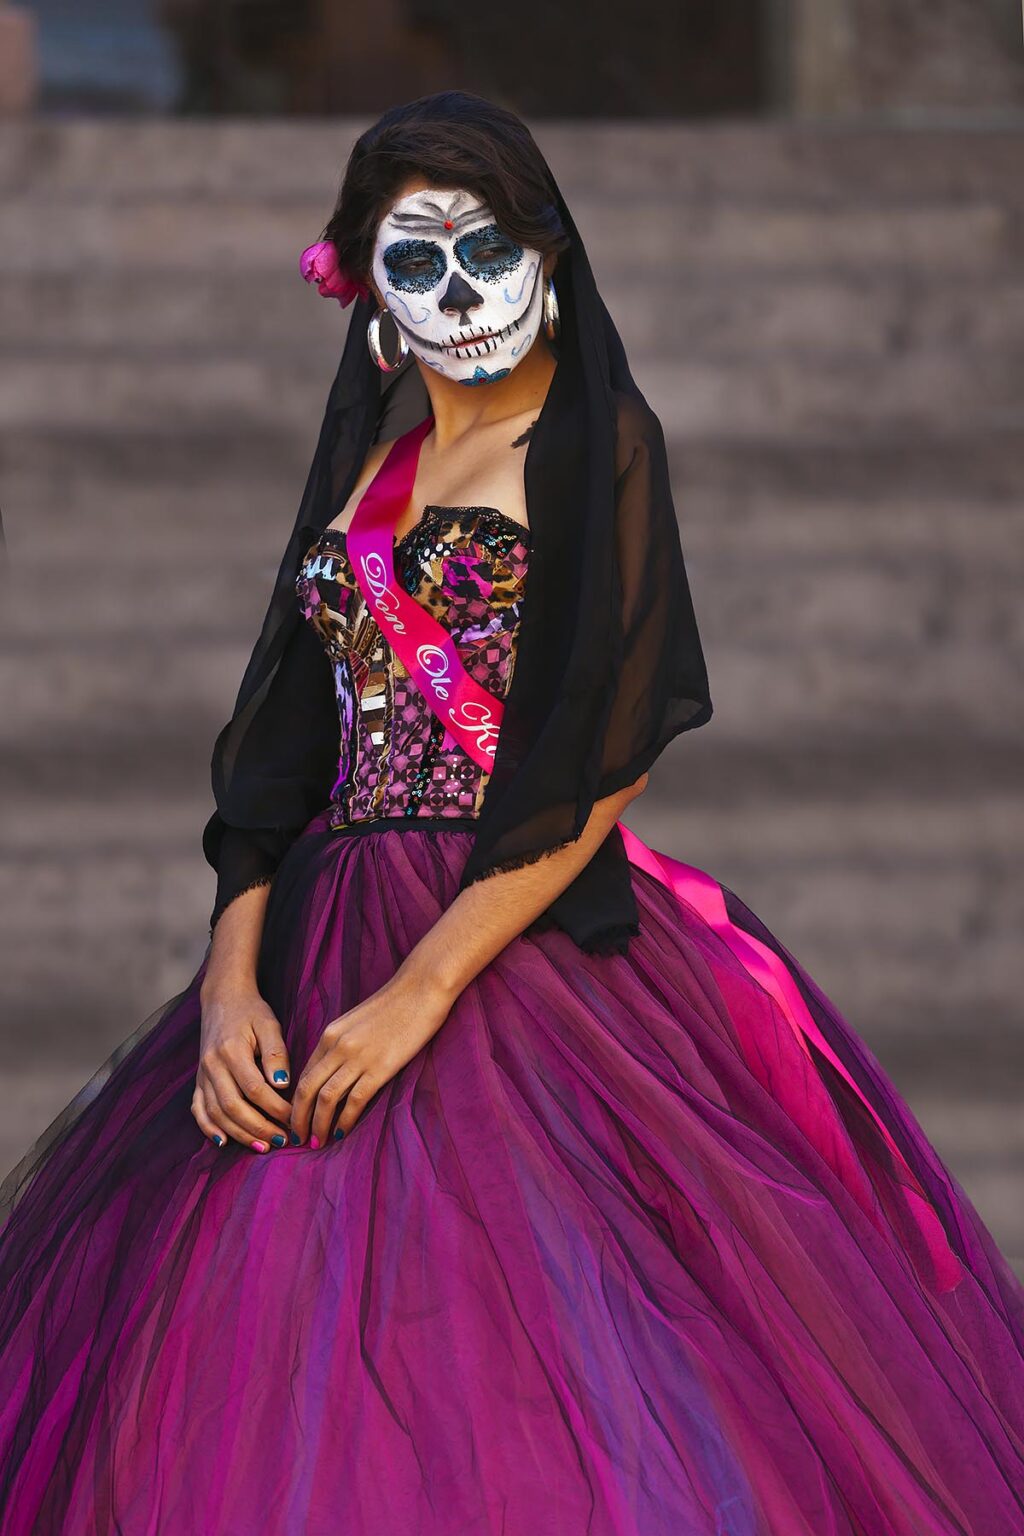 LA CALAVERA CATRINA or Elegant Skull, is the icon of the DAY OF THE DEAD - GUANAJUATO, MEXICO